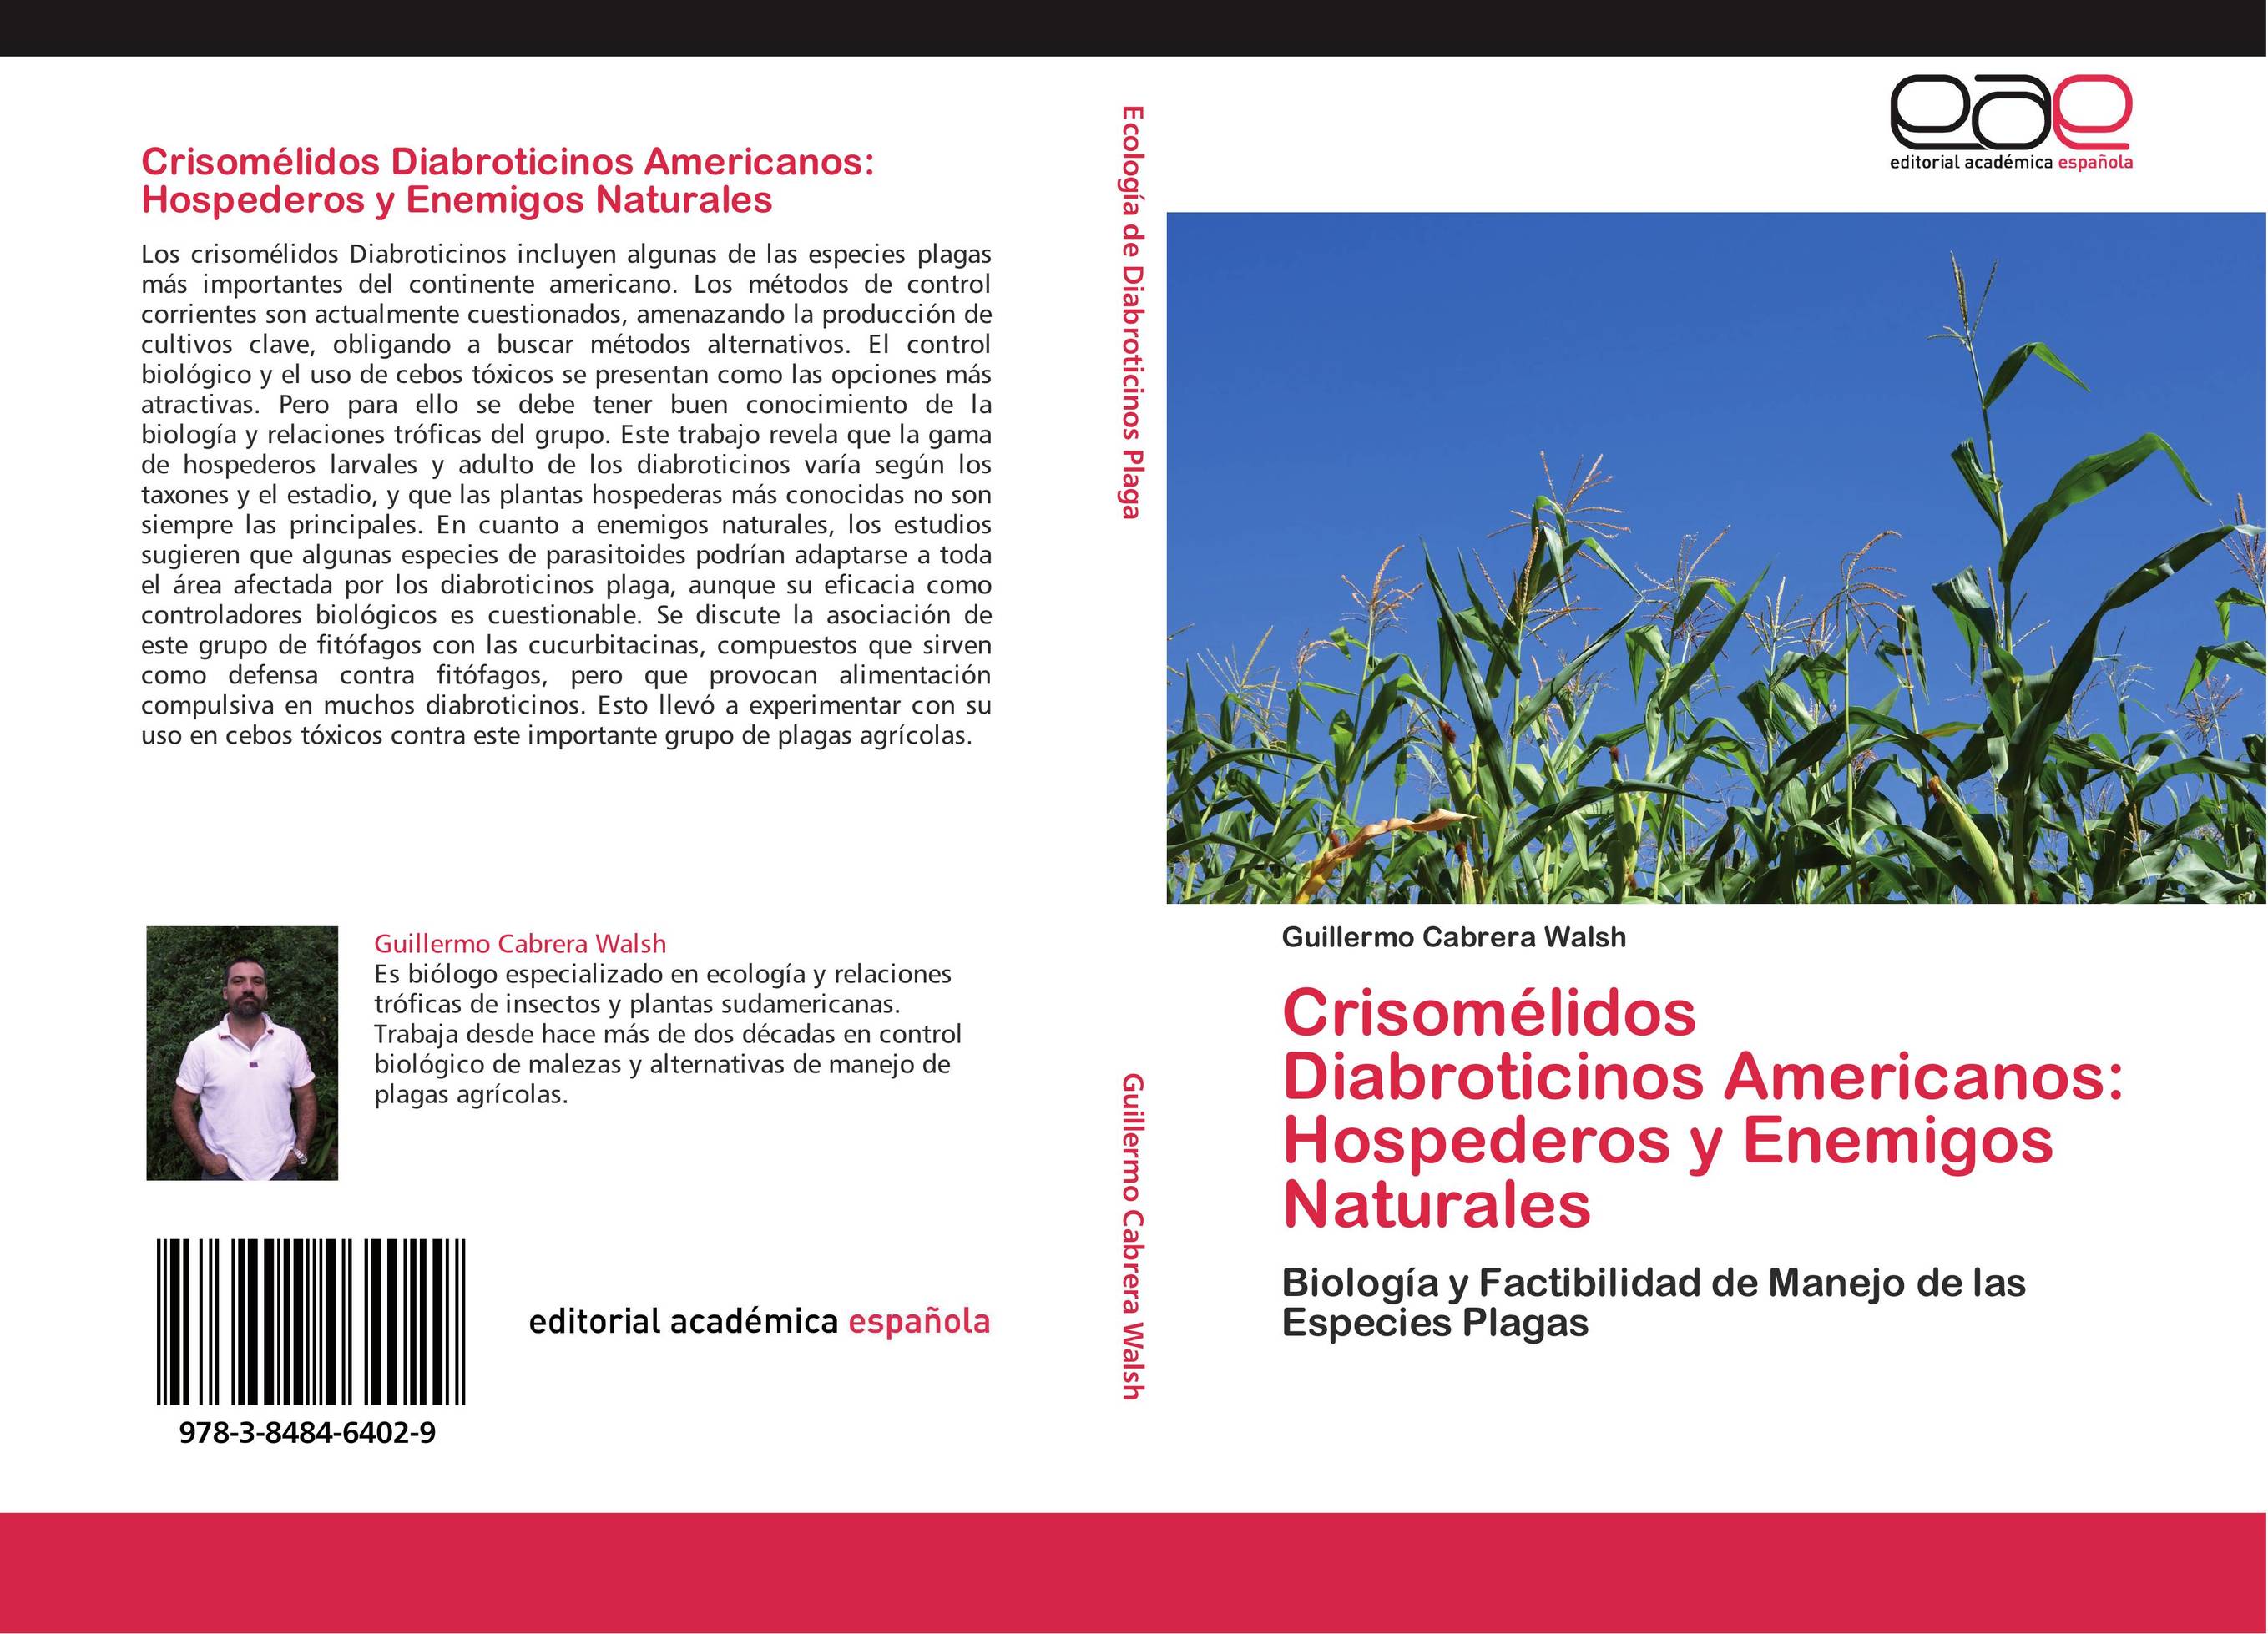 Crisomélidos Diabroticinos Americanos: Hospederos y Enemigos Naturales